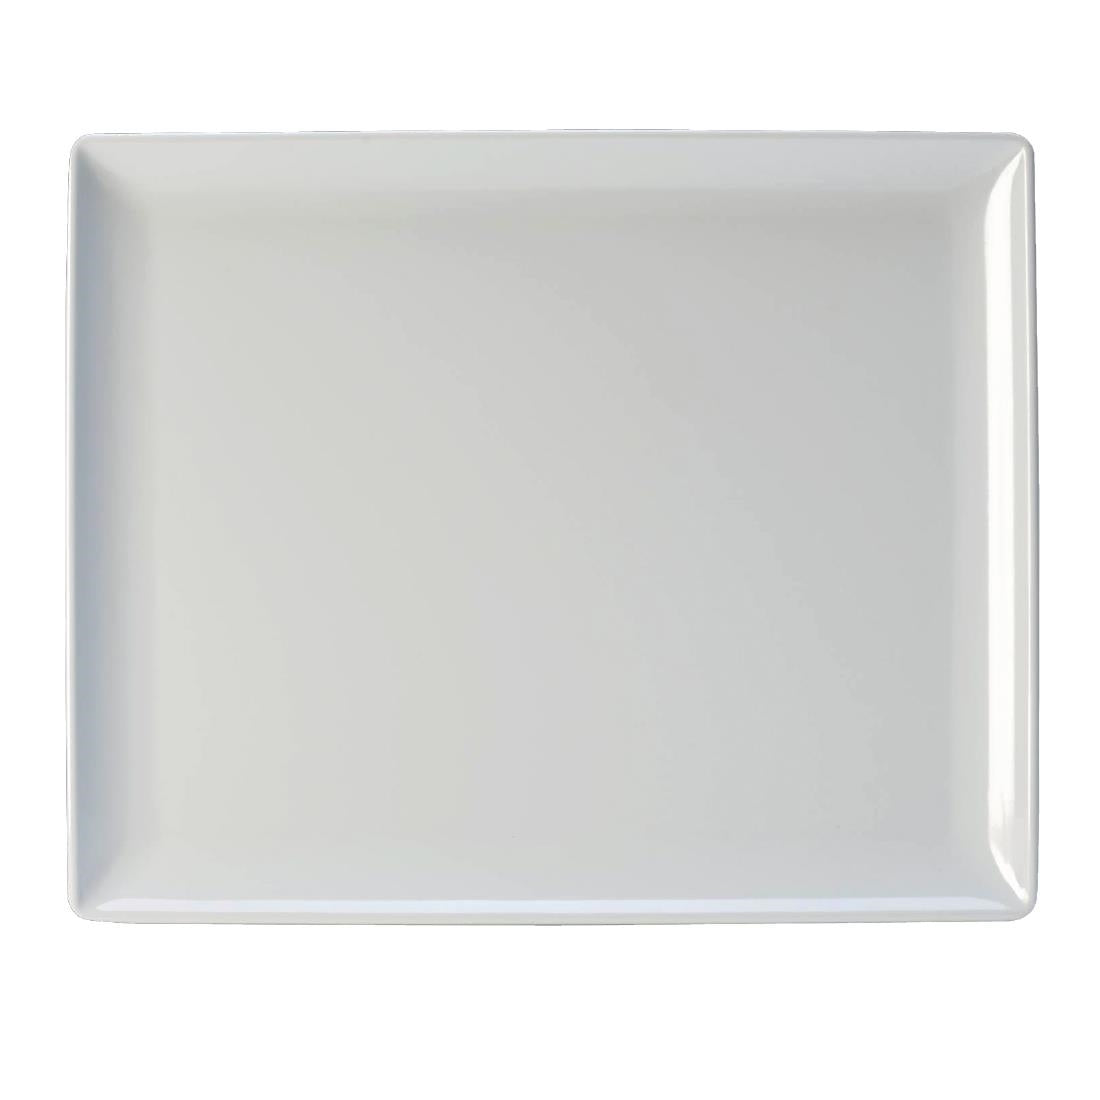 VV458 Steelite Craft Melamine Rectangular Platters White GN 1/2 (Pack of 3)